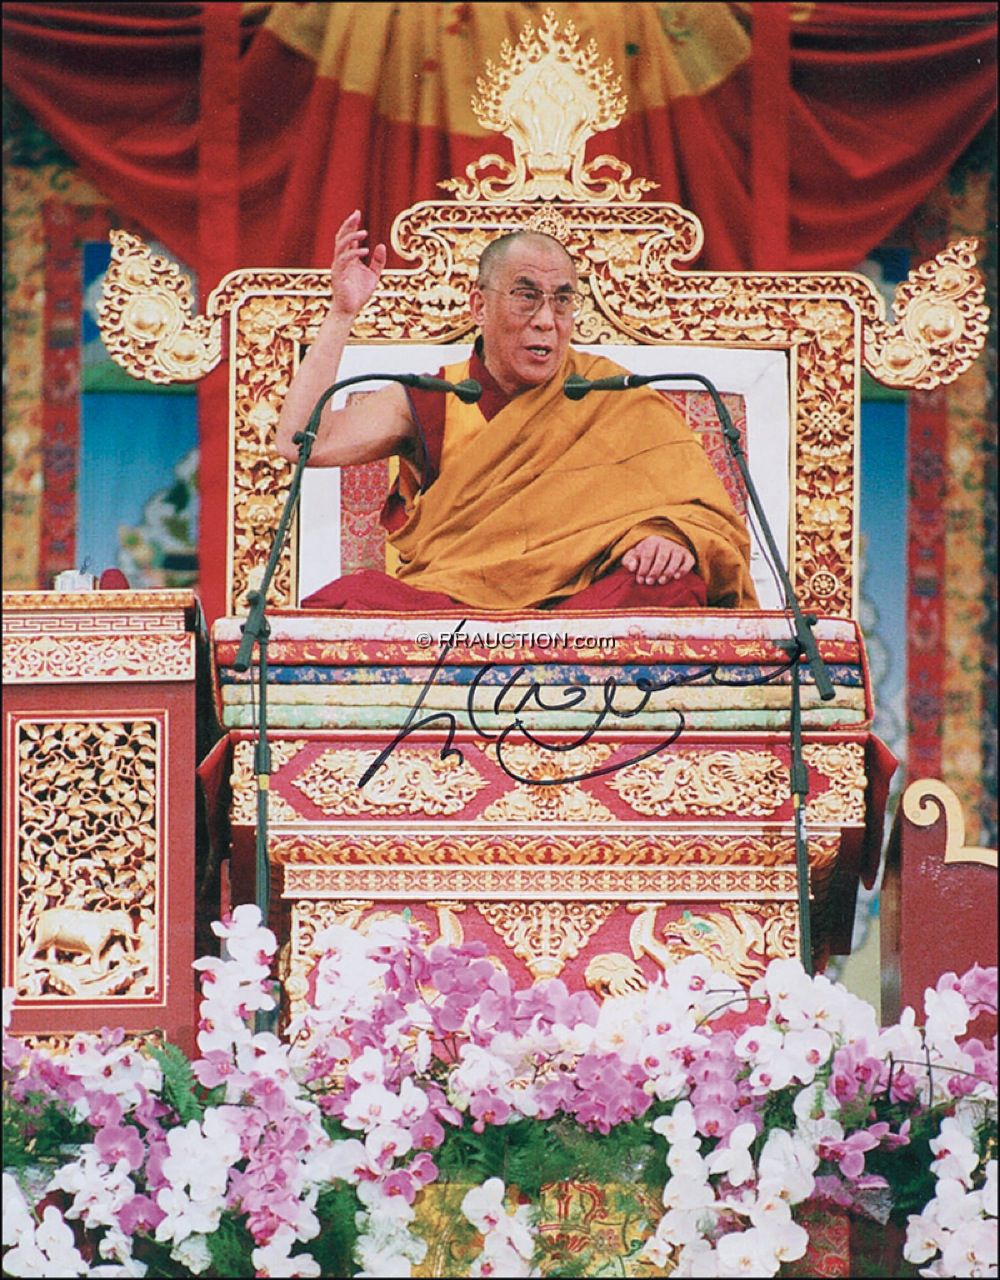 Lot #273  Dalai Lama